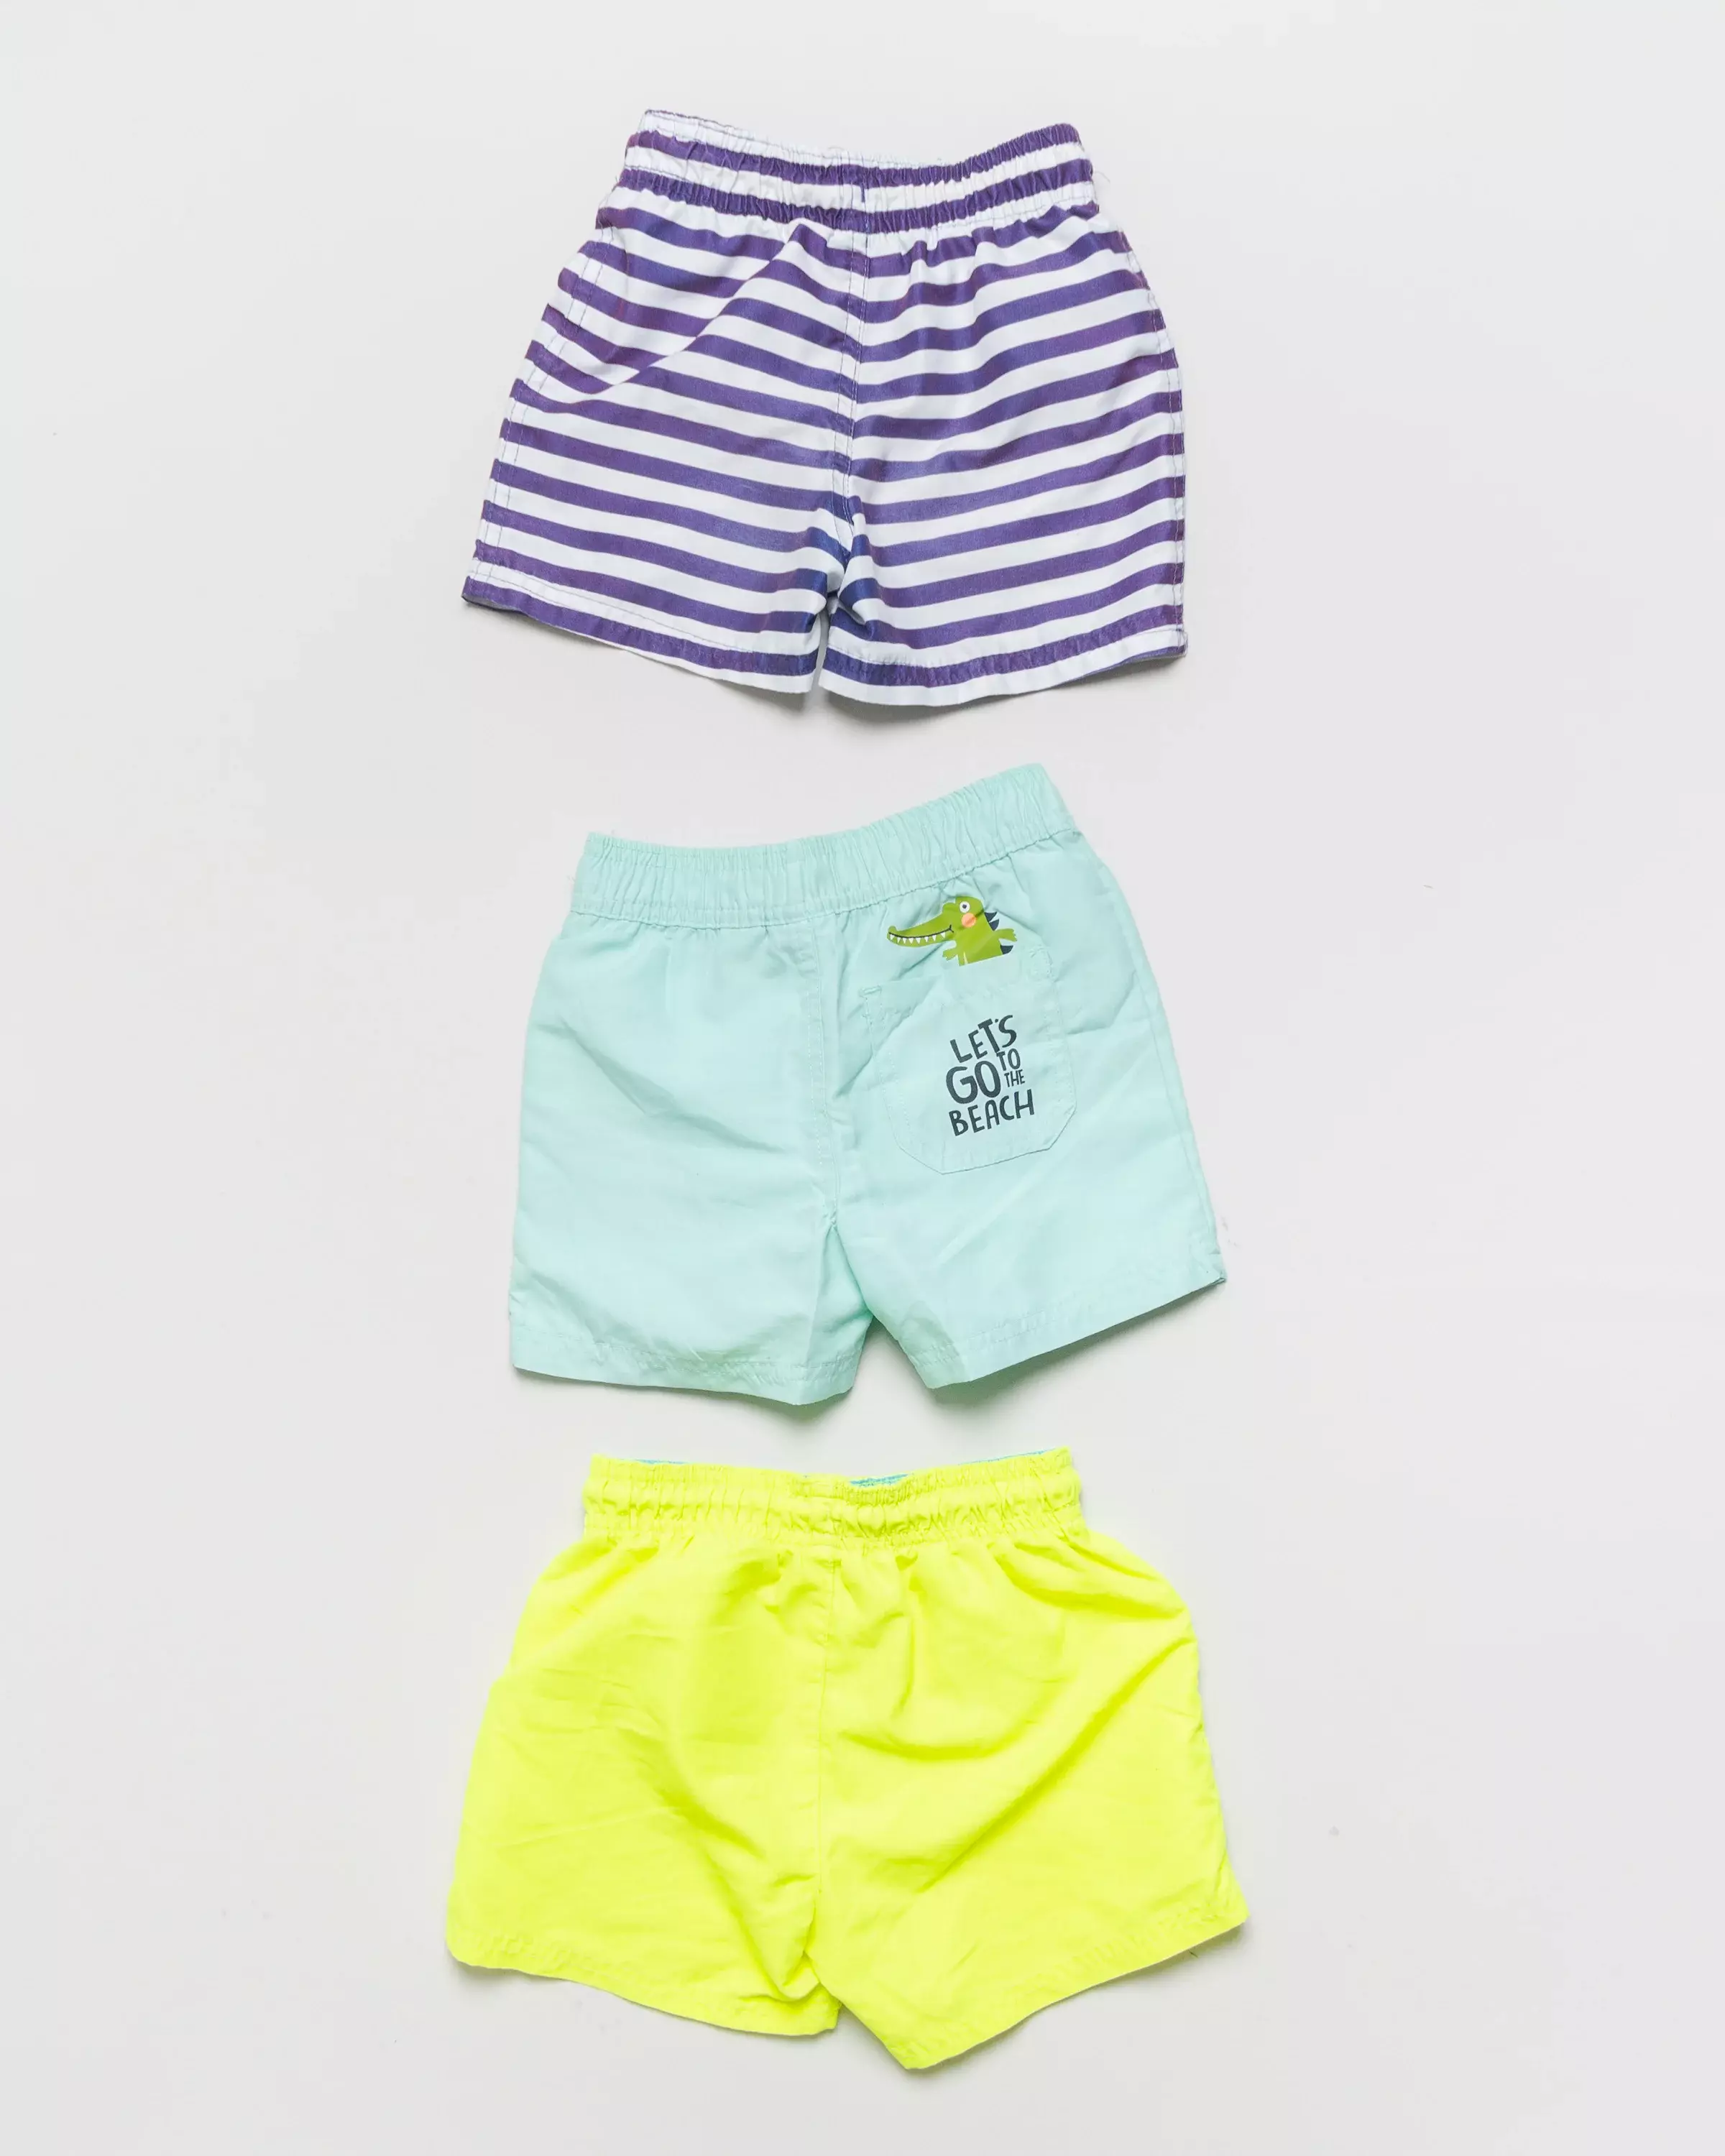 1x Badehose Gr. 98 – Shorts Streifen mintgrün maritim neon gelb weit